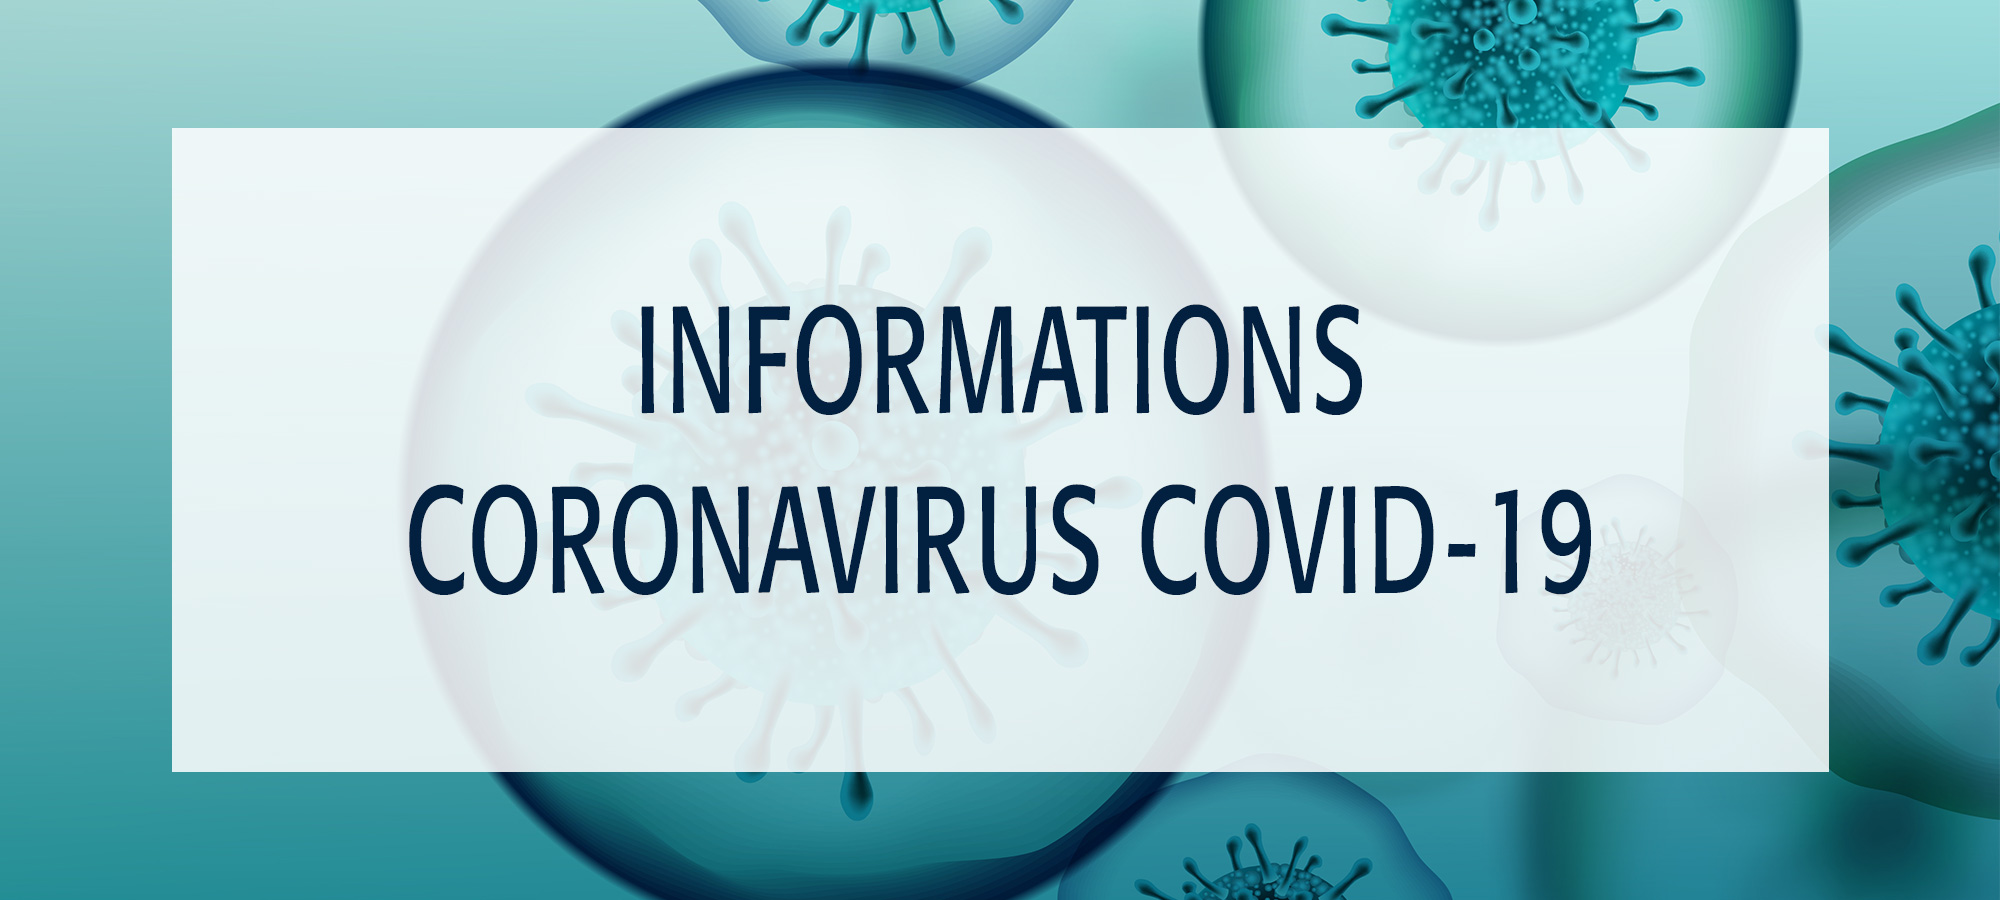 informations coronavirus